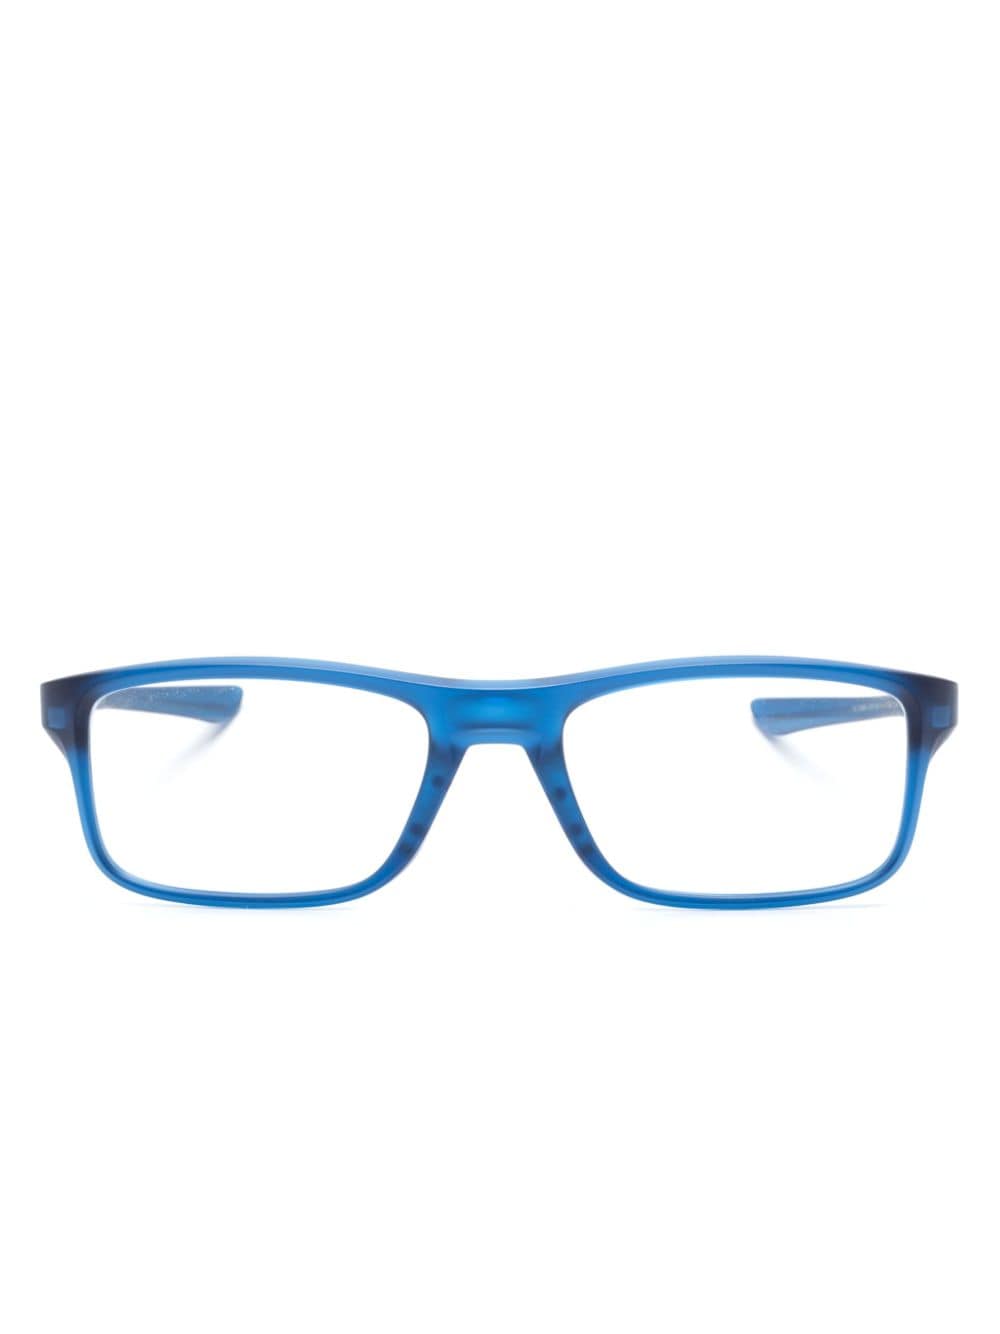 oakley lunettes de vue plank 2.0 à monture carrée - bleu